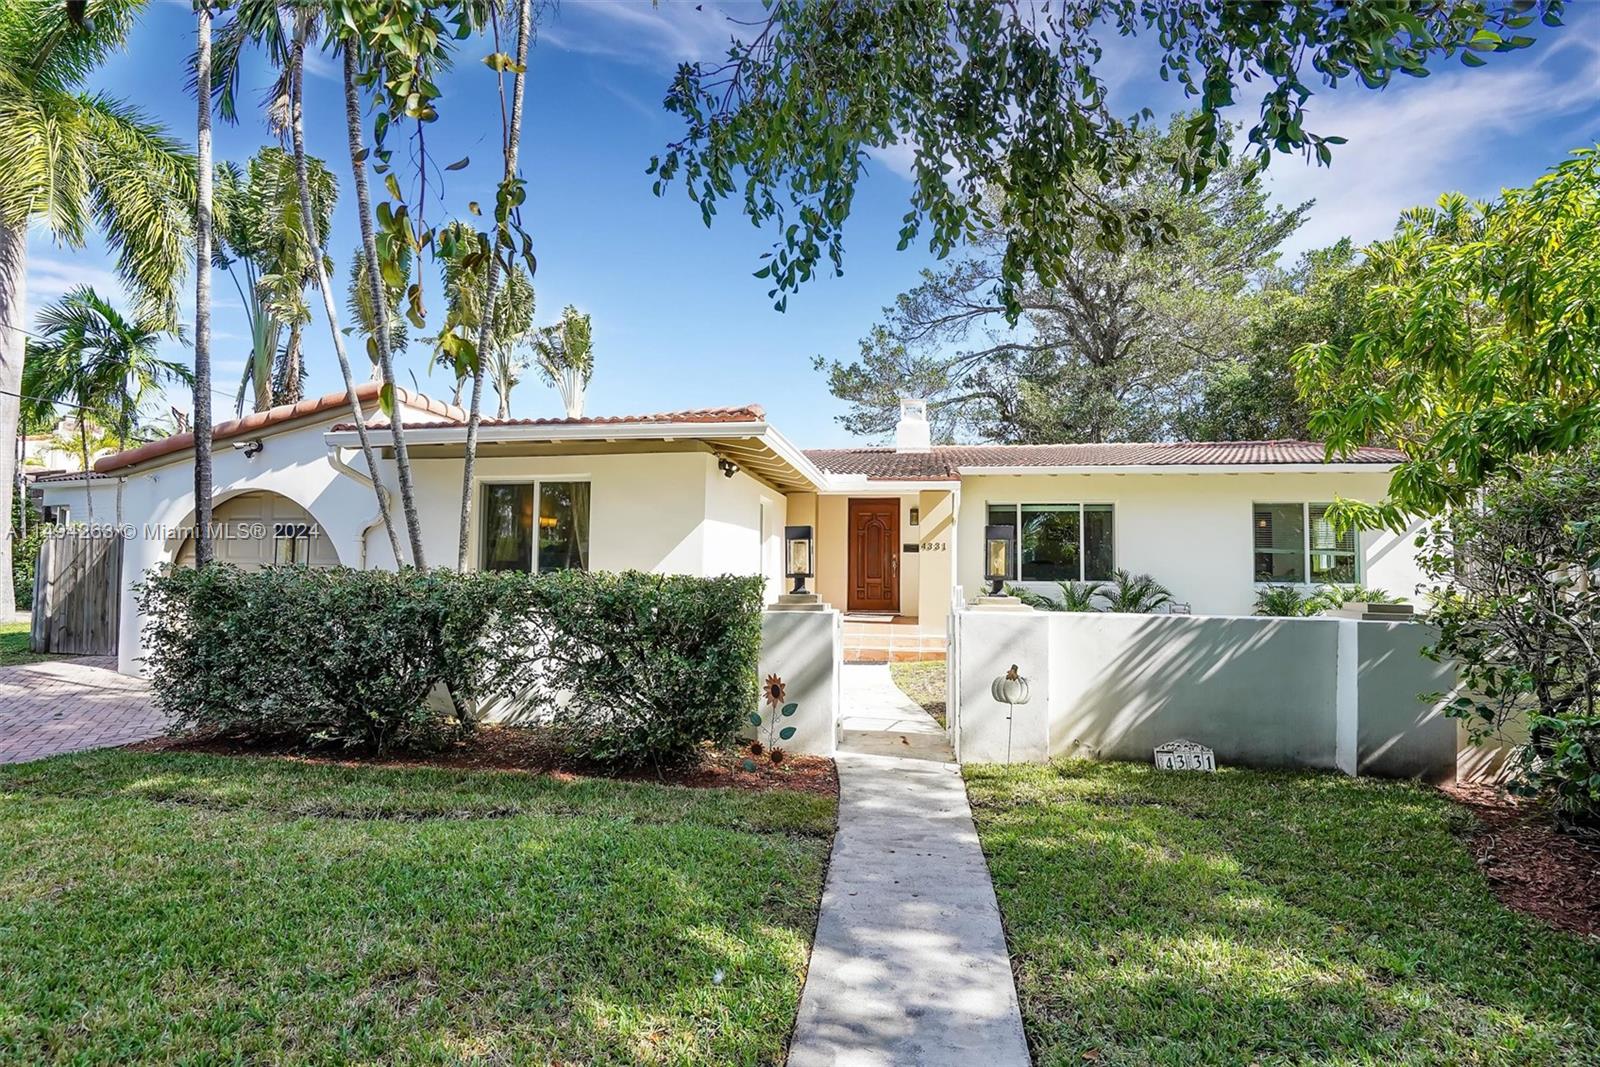 Property for Sale at 4331 Alton Rd Rd, Miami Beach, Miami-Dade County, Florida - Bedrooms: 5 
Bathrooms: 4  - $2,350,000